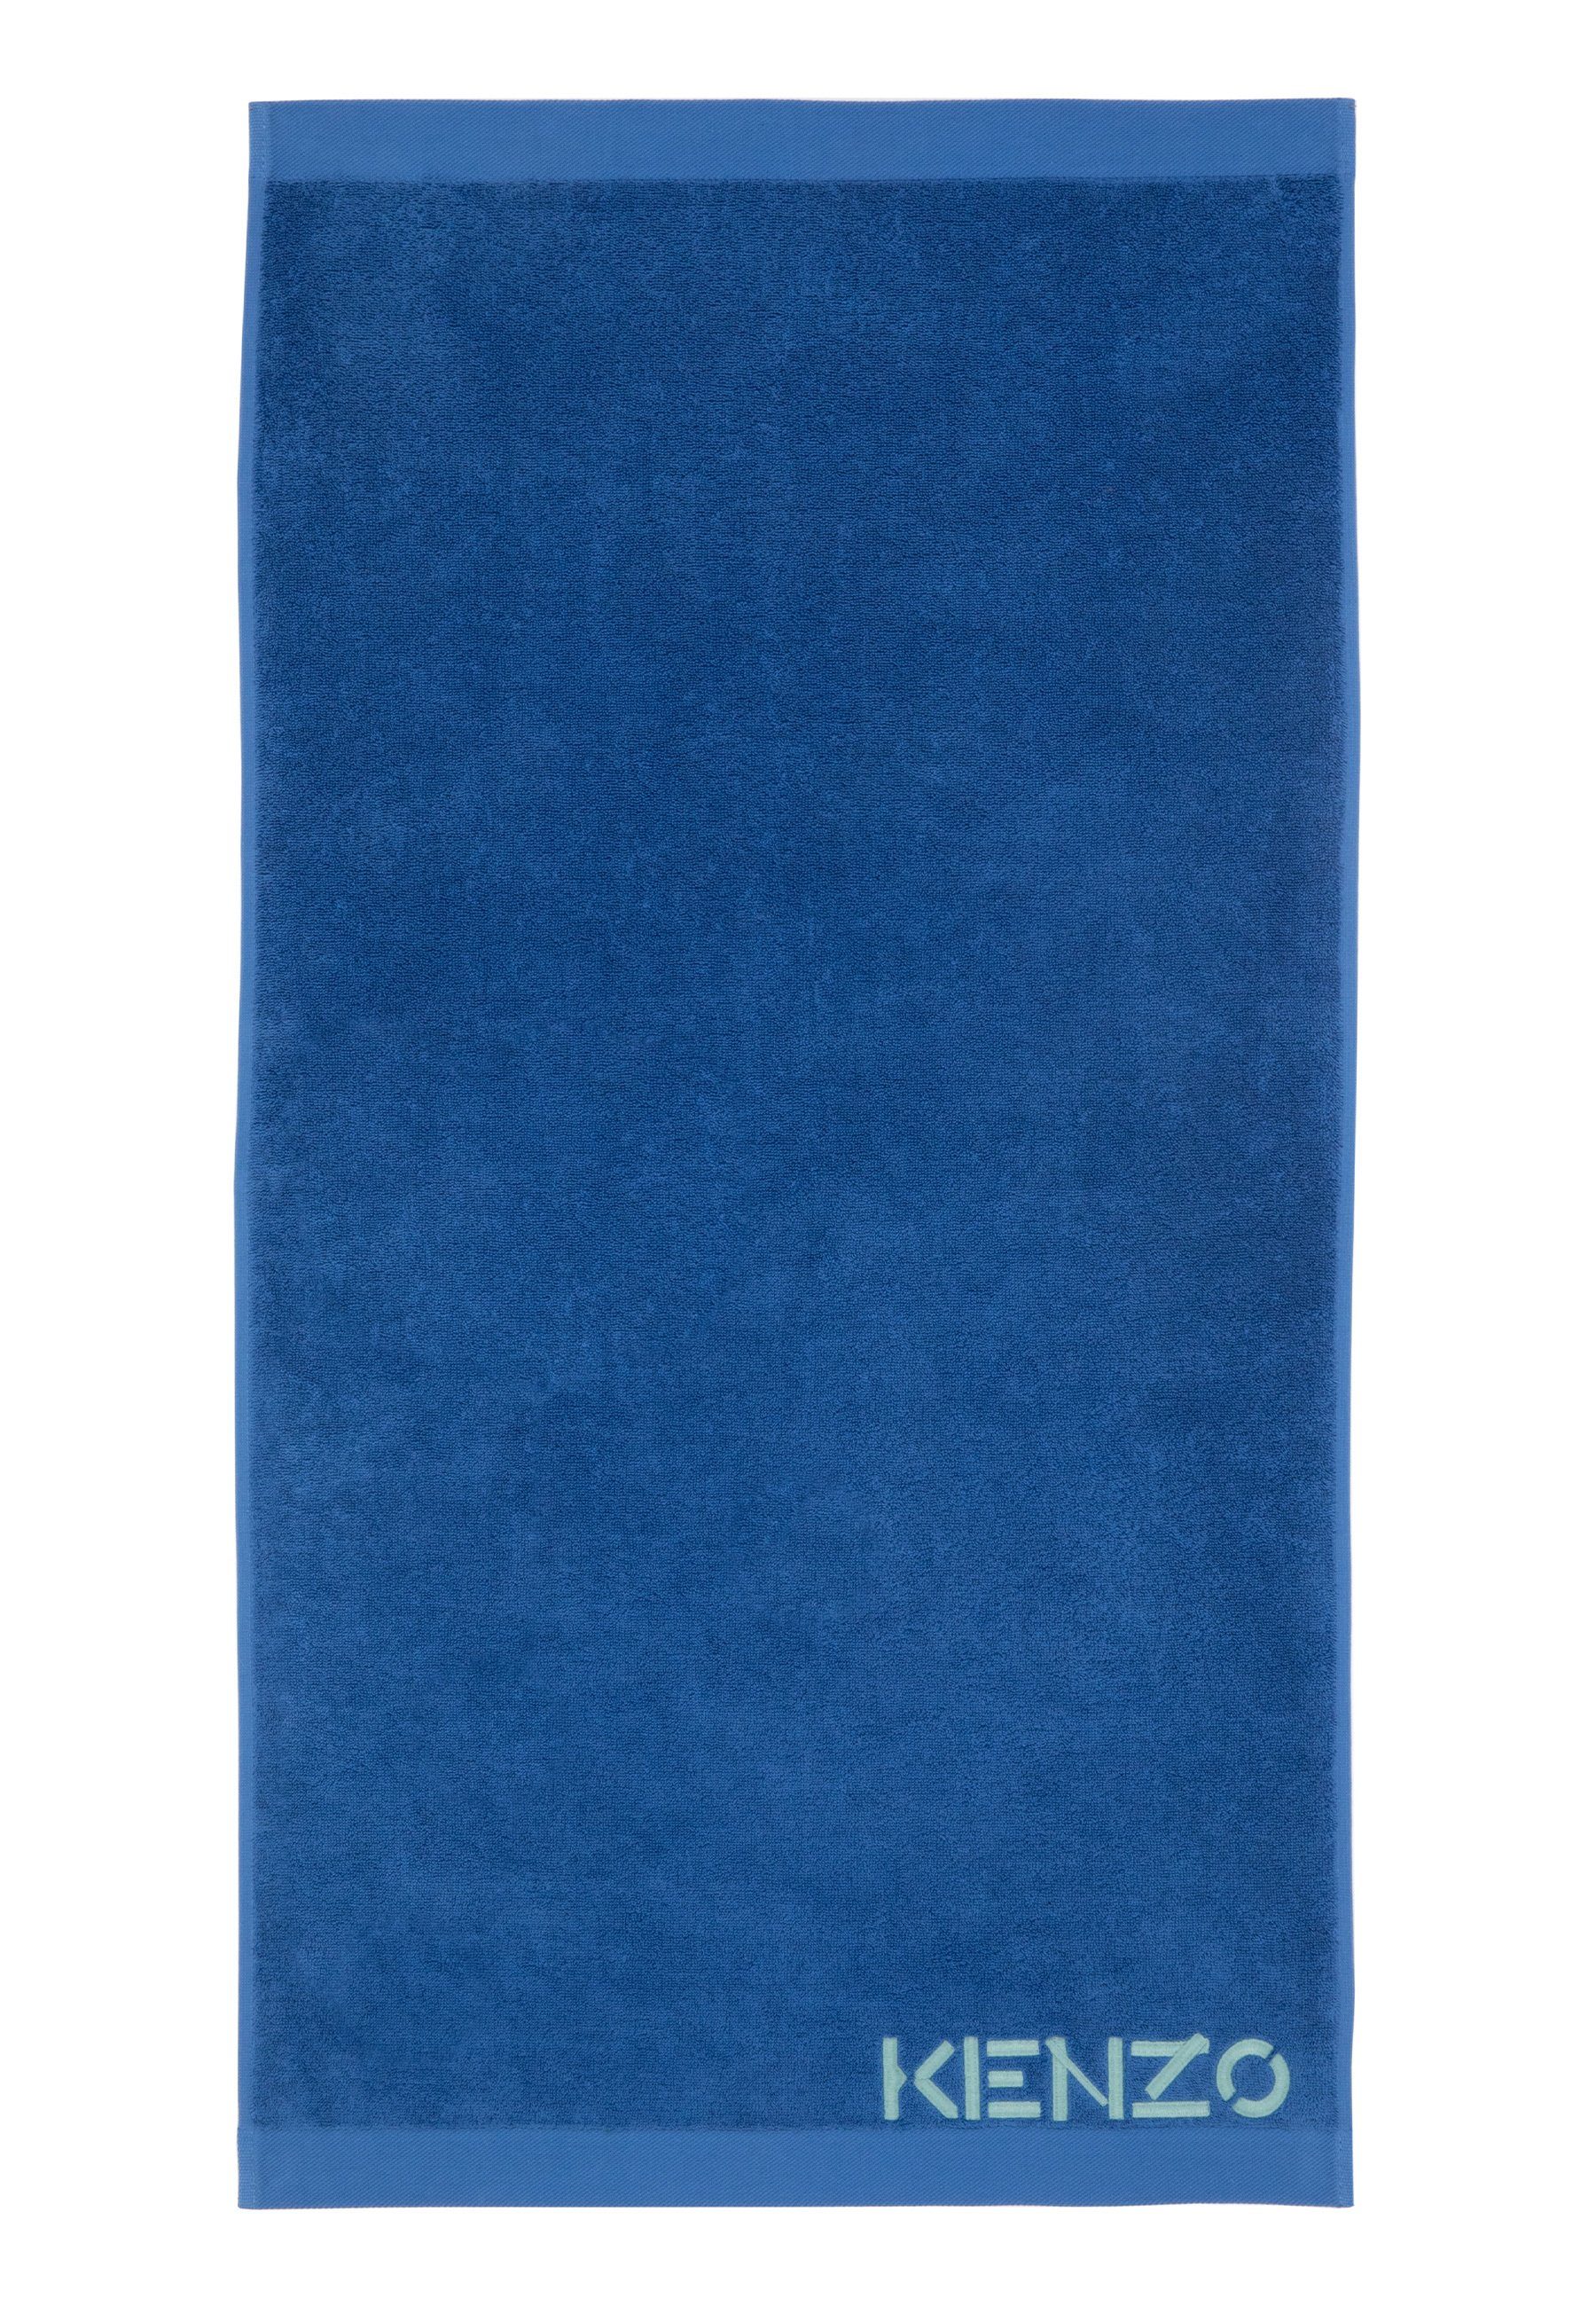 KENZO MAISON Gästehandtücher ICONIC (2tlg), 100.0% Baumwolle, mit modernem Design electric